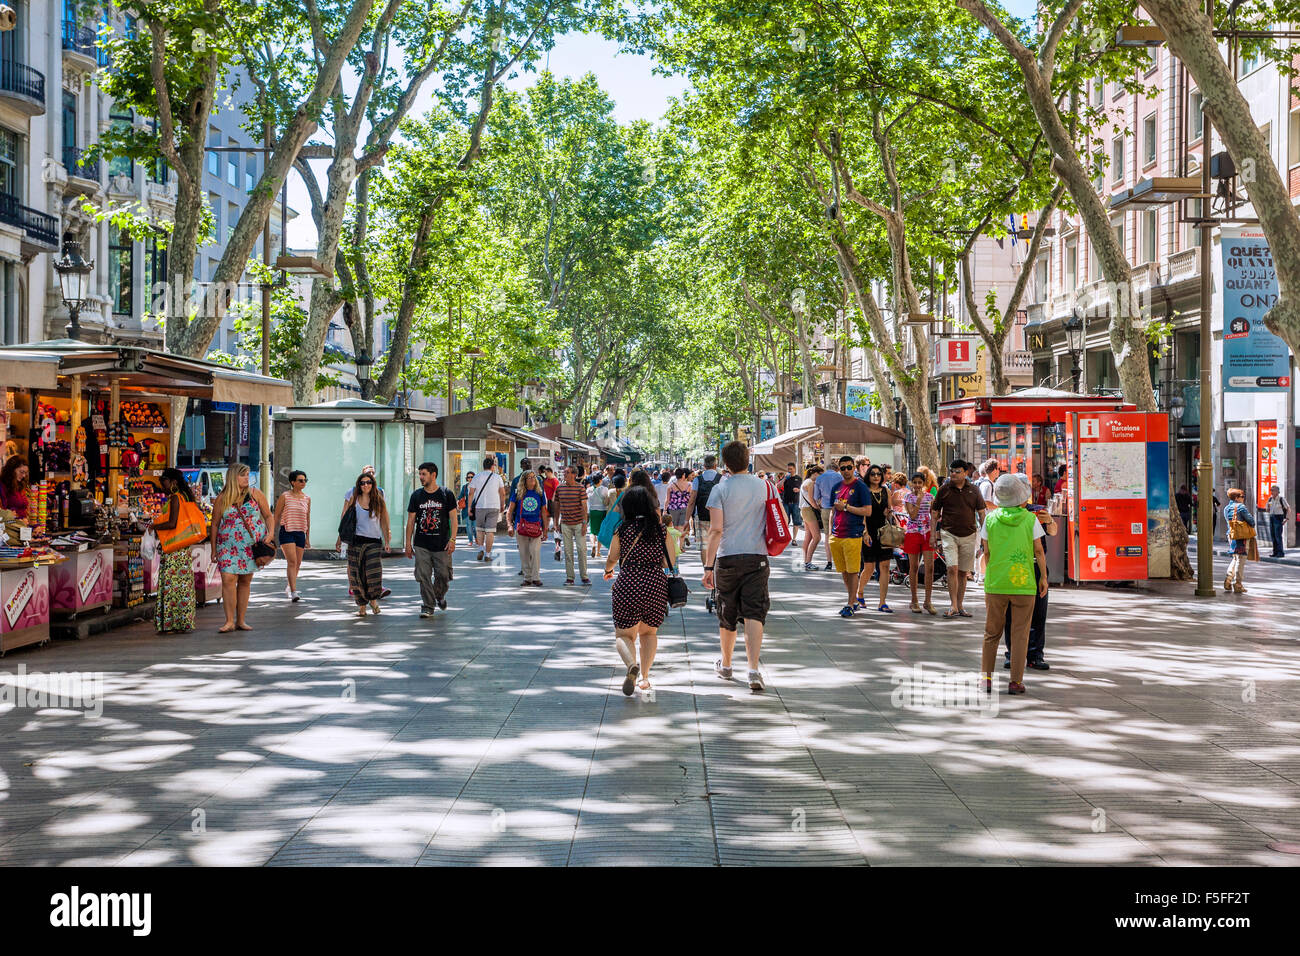 Espagne, Catalogne, Barcelone, La Rambla, centre commercial piétonnier bordé d'arbres, populaire auprès des touristes et des habitants Banque D'Images